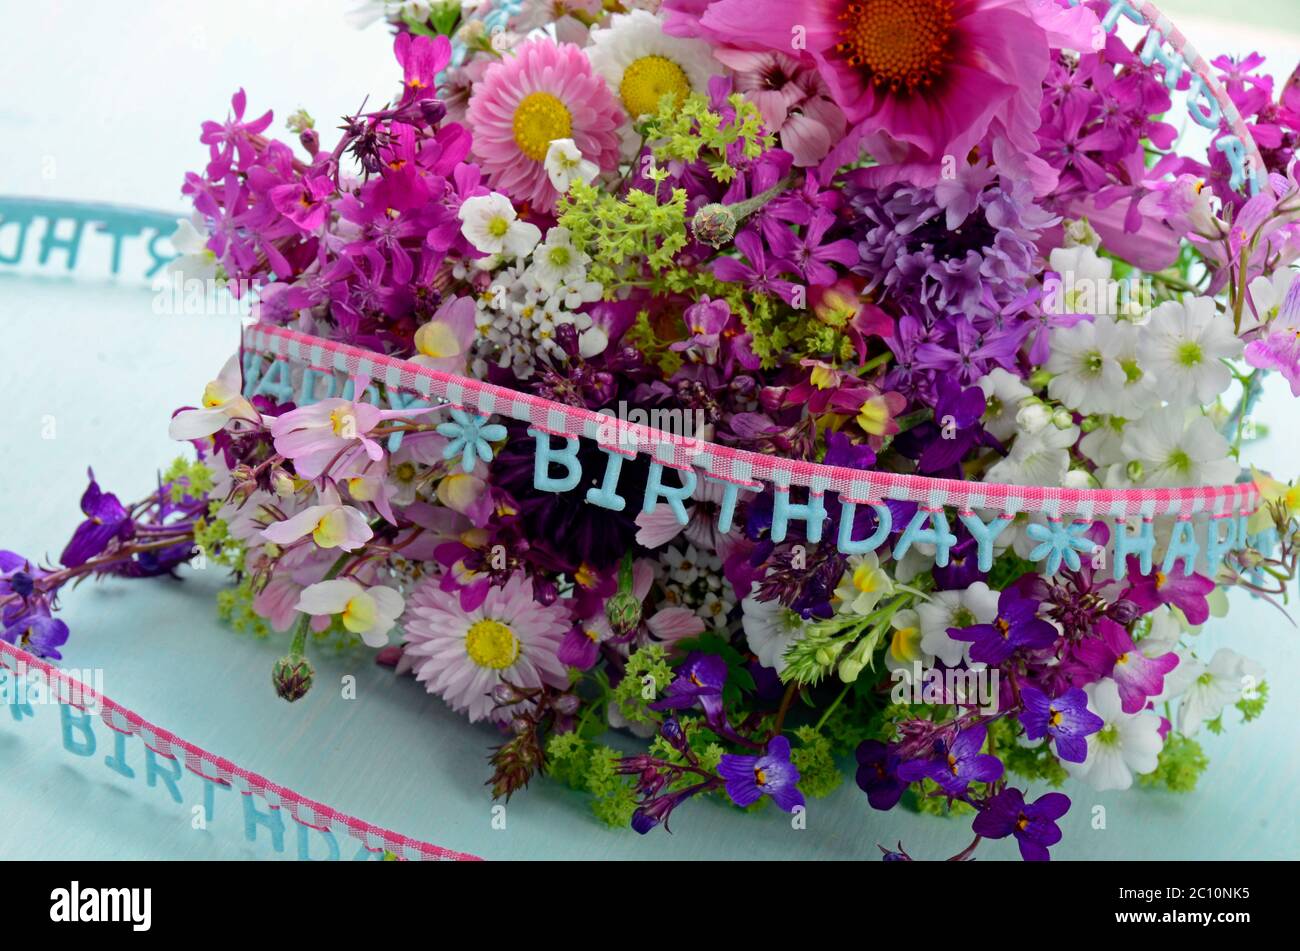 Ramo de cumpleaños con flores de verano Foto de stock